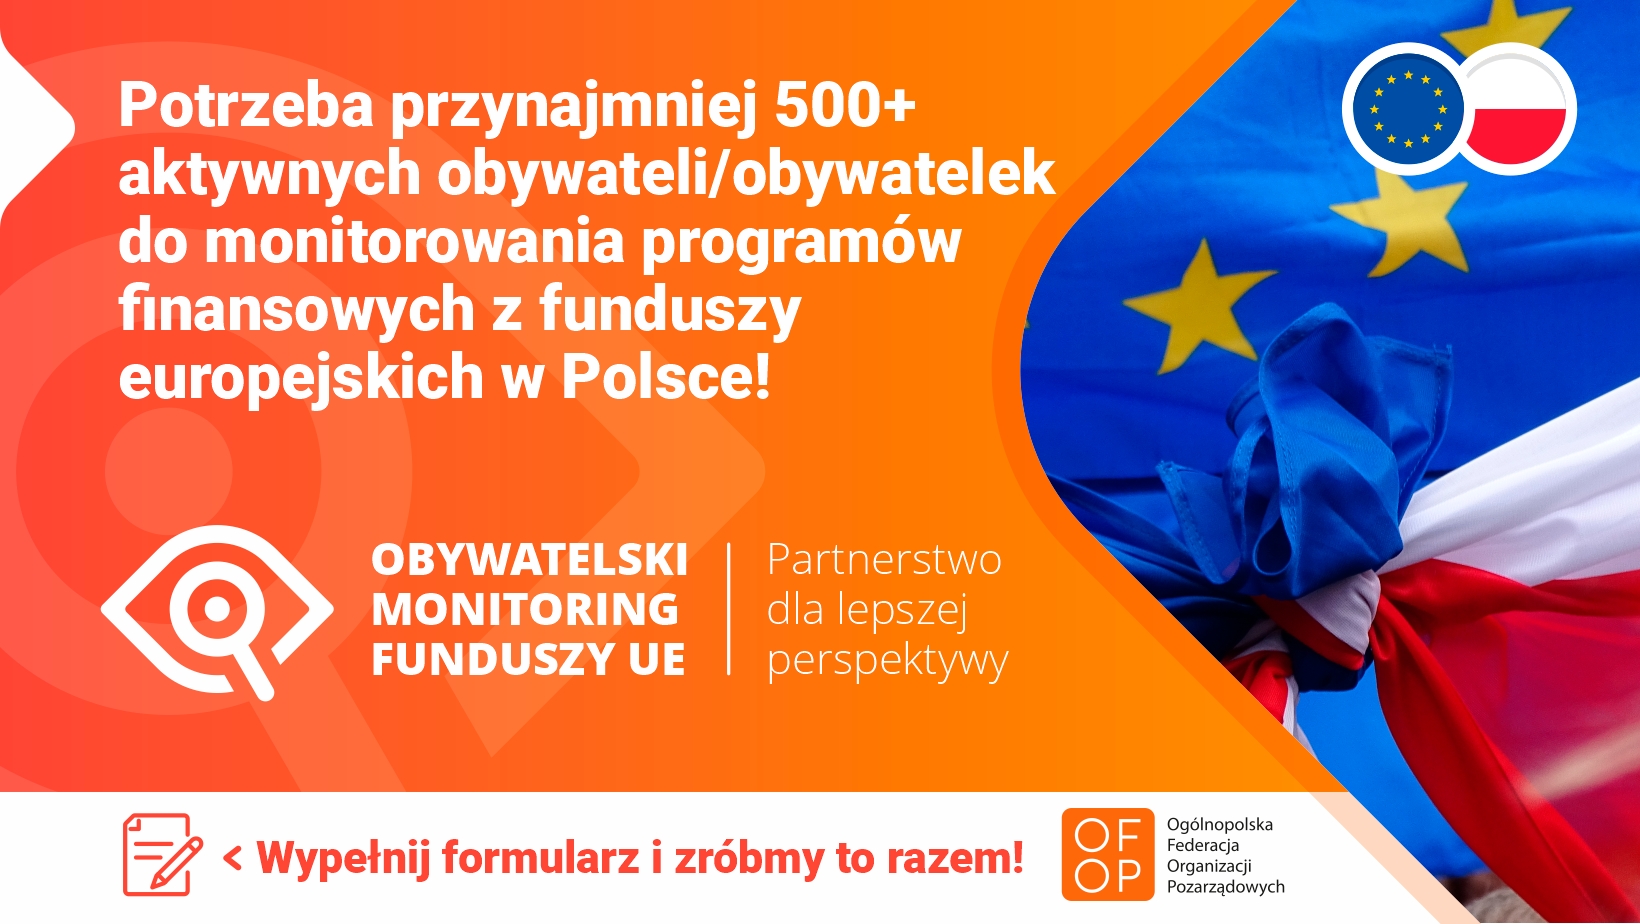 OFOP_obywatelski_monitoring_funduszyUE